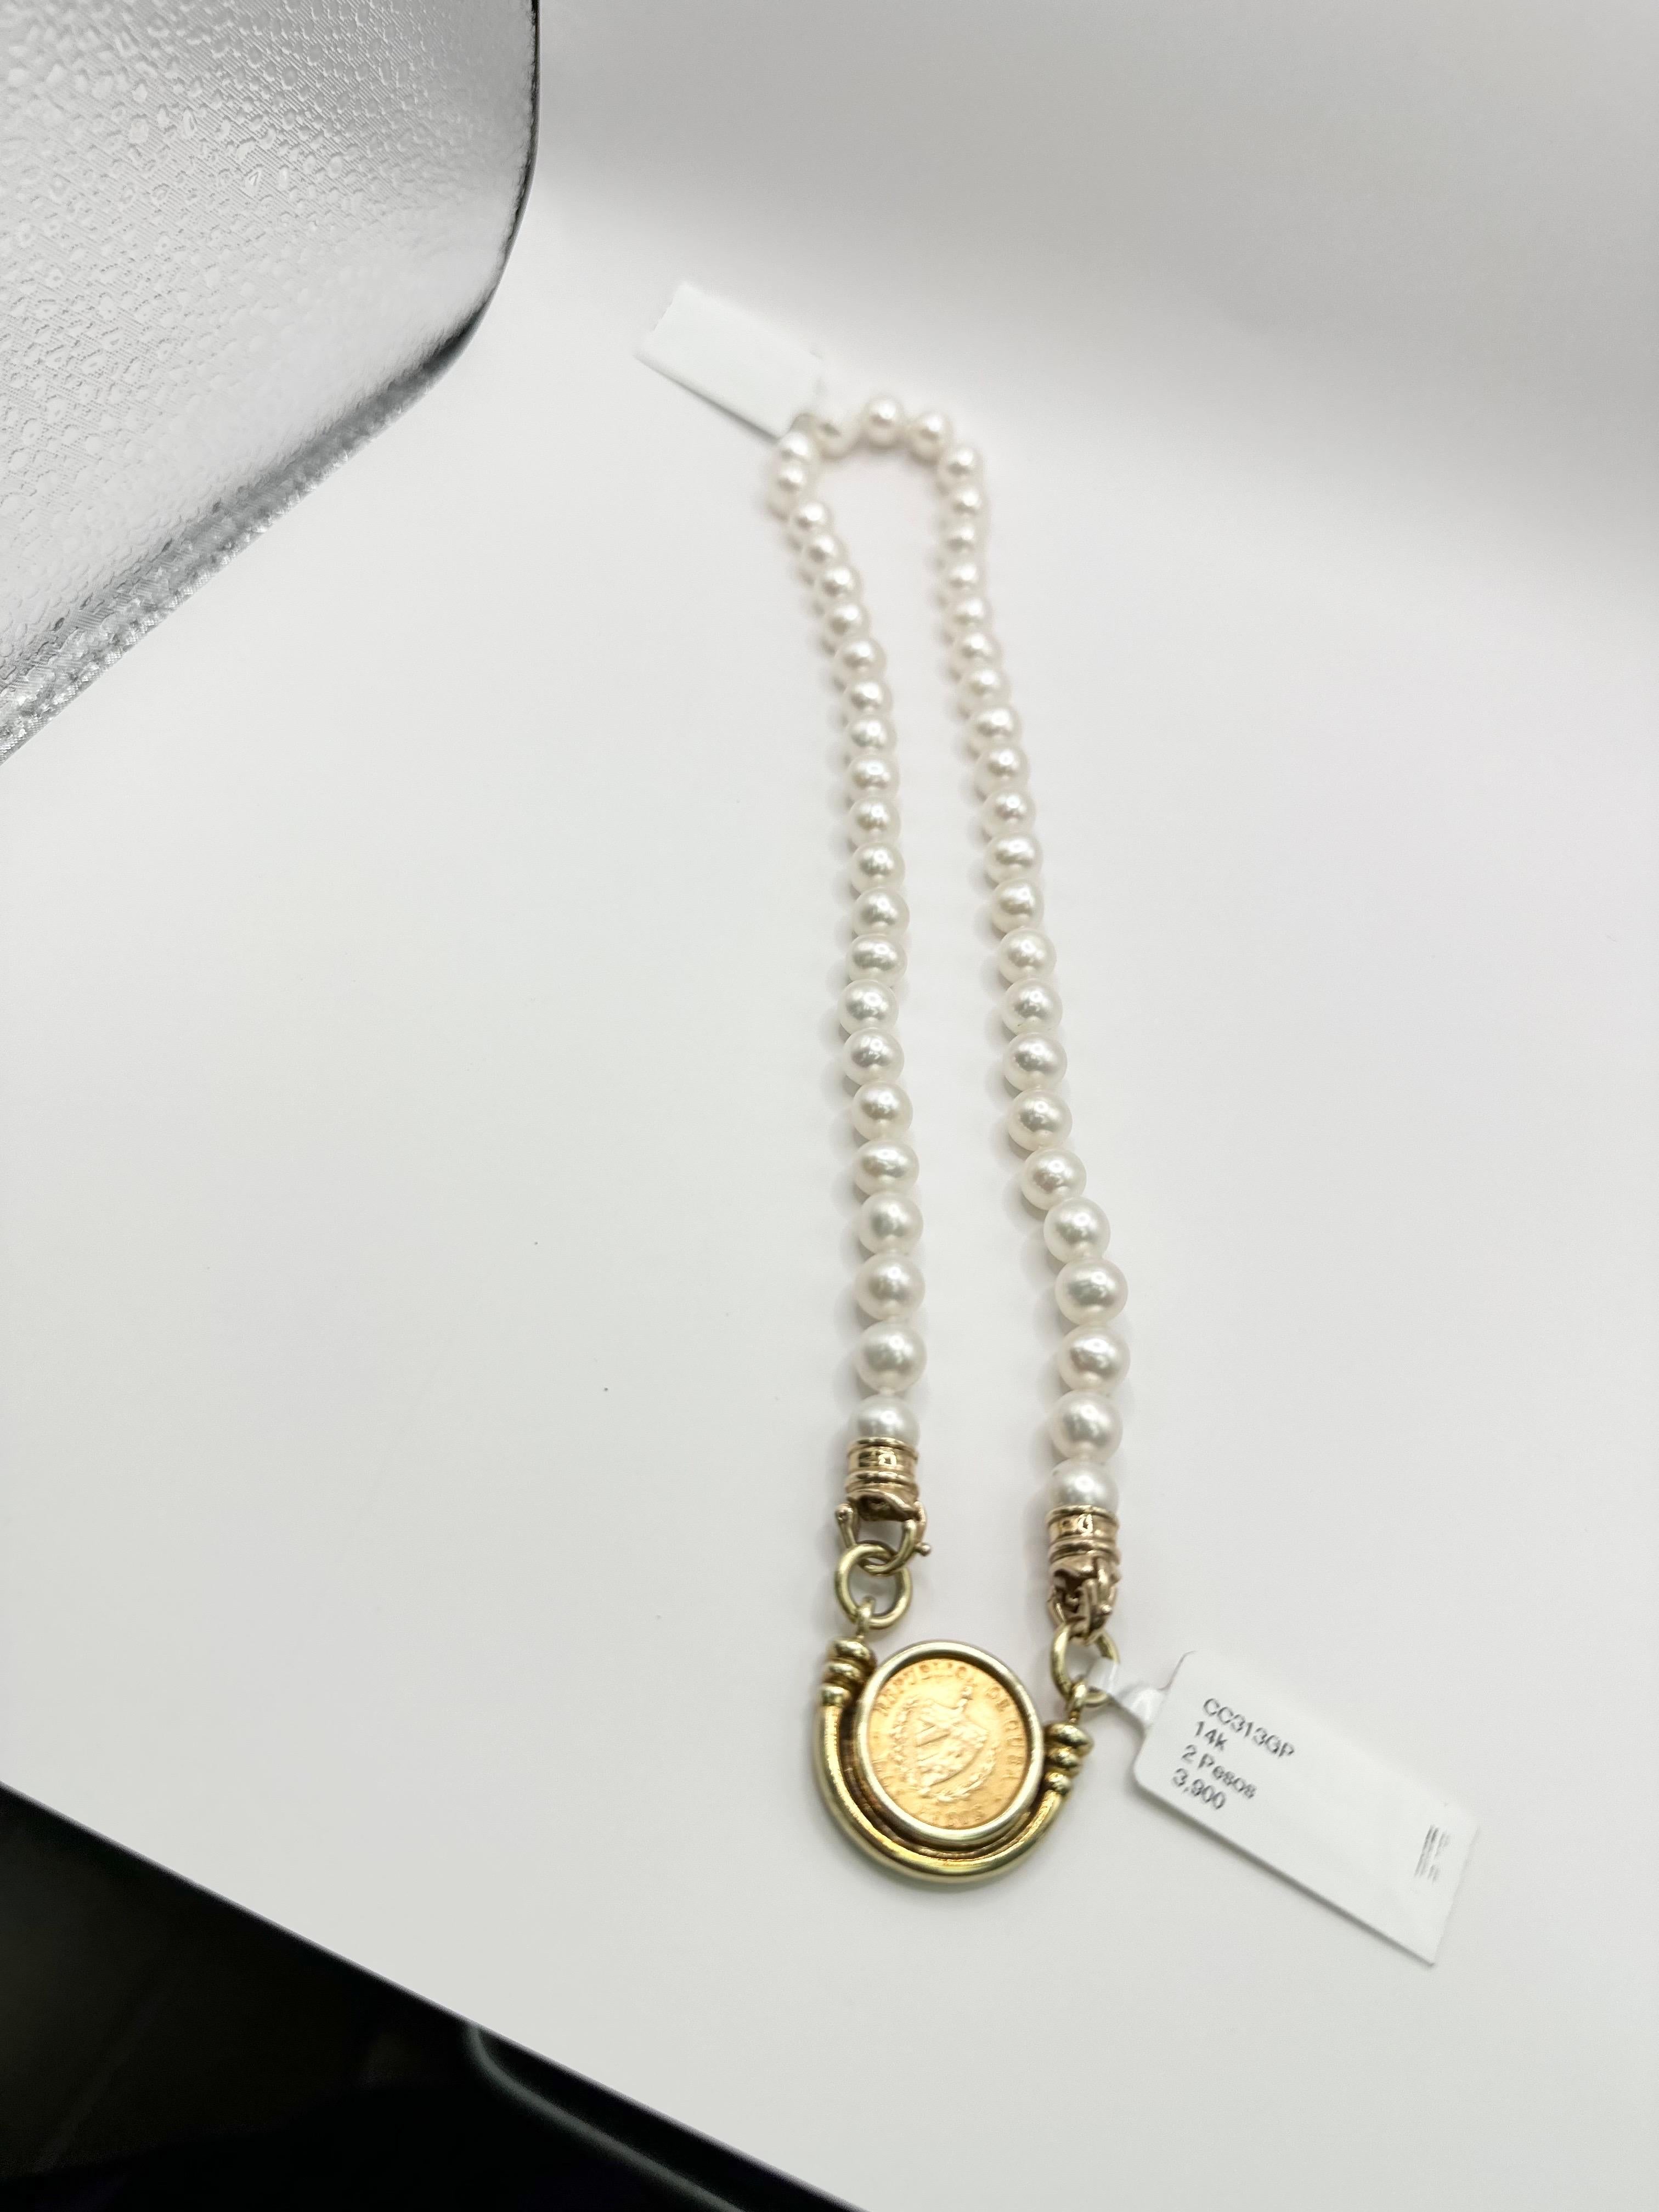 Einzigartige Münzhalskette mit natürlichen Perlen, 2 kubanische Pesos Halskette in 14Kt massivem Gold! Die Kette ist ca. 17 Zoll!

Das Echtheitszertifikat wird beim Kauf mitgeliefert!

ÜBER UNS
Wir sind ein familiengeführtes Unternehmen. Unser